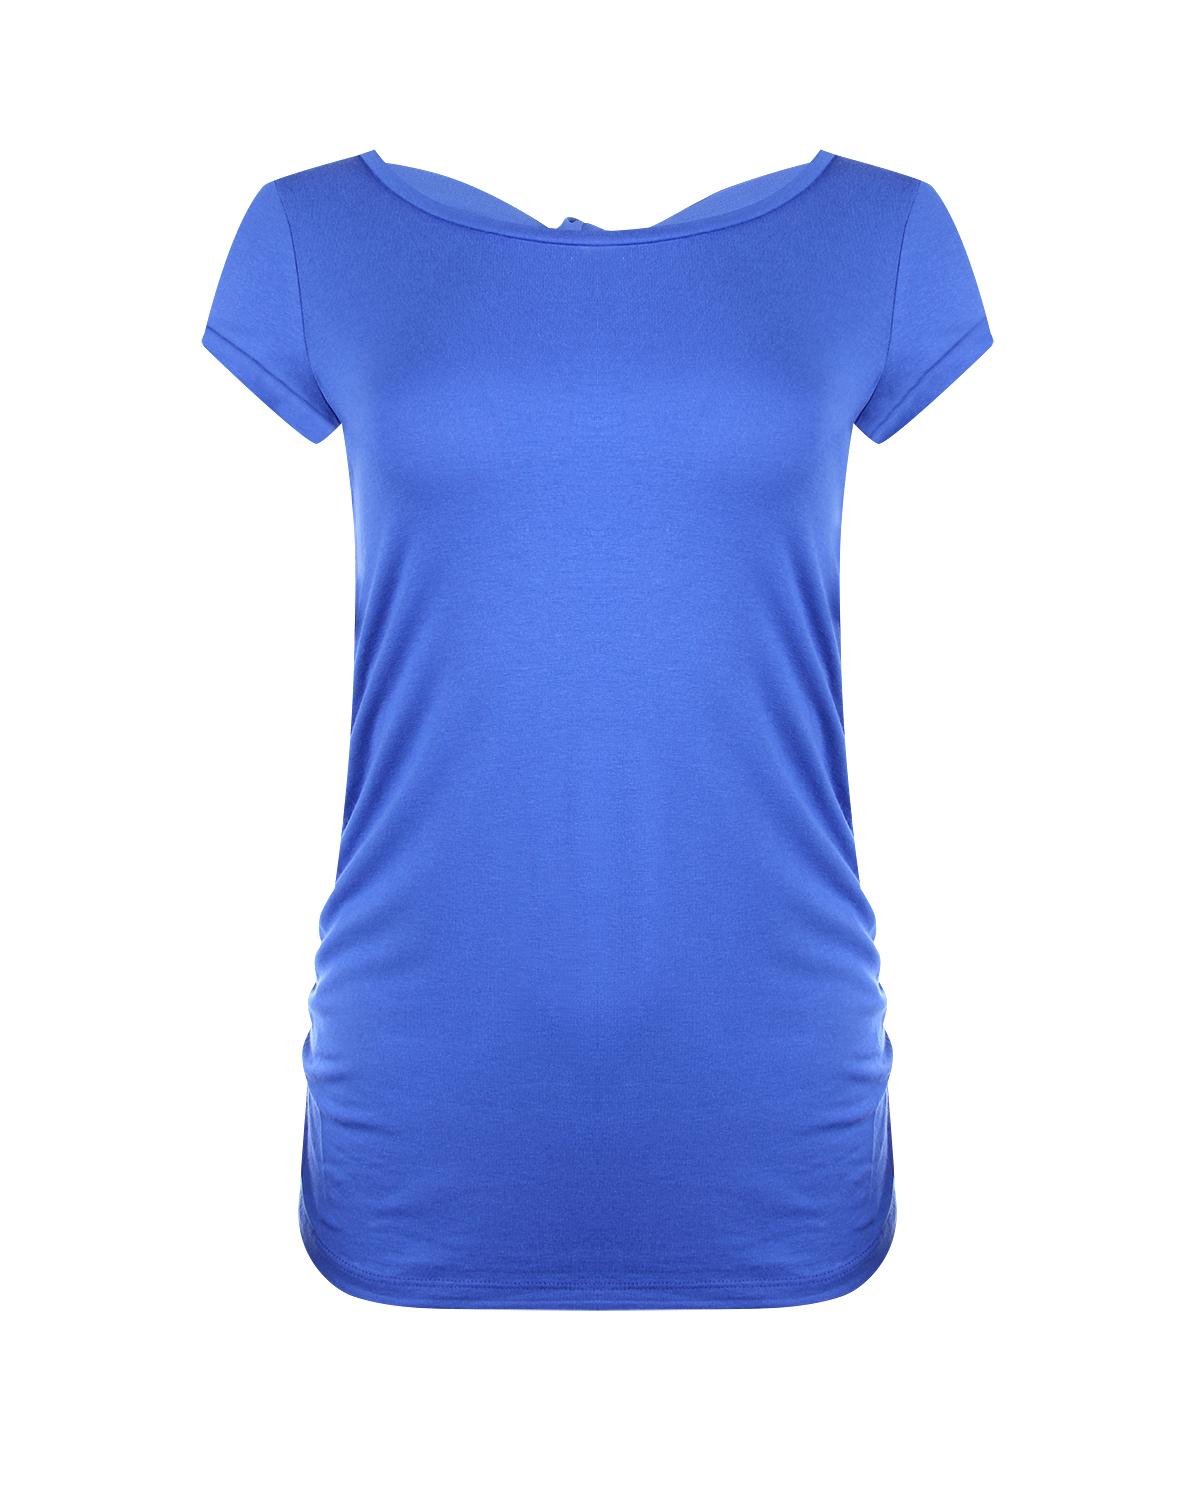 Купить Синяя футболка для беременных Attesa, Голубой, 90%вискоза+10%эластан, 100%полиэстер